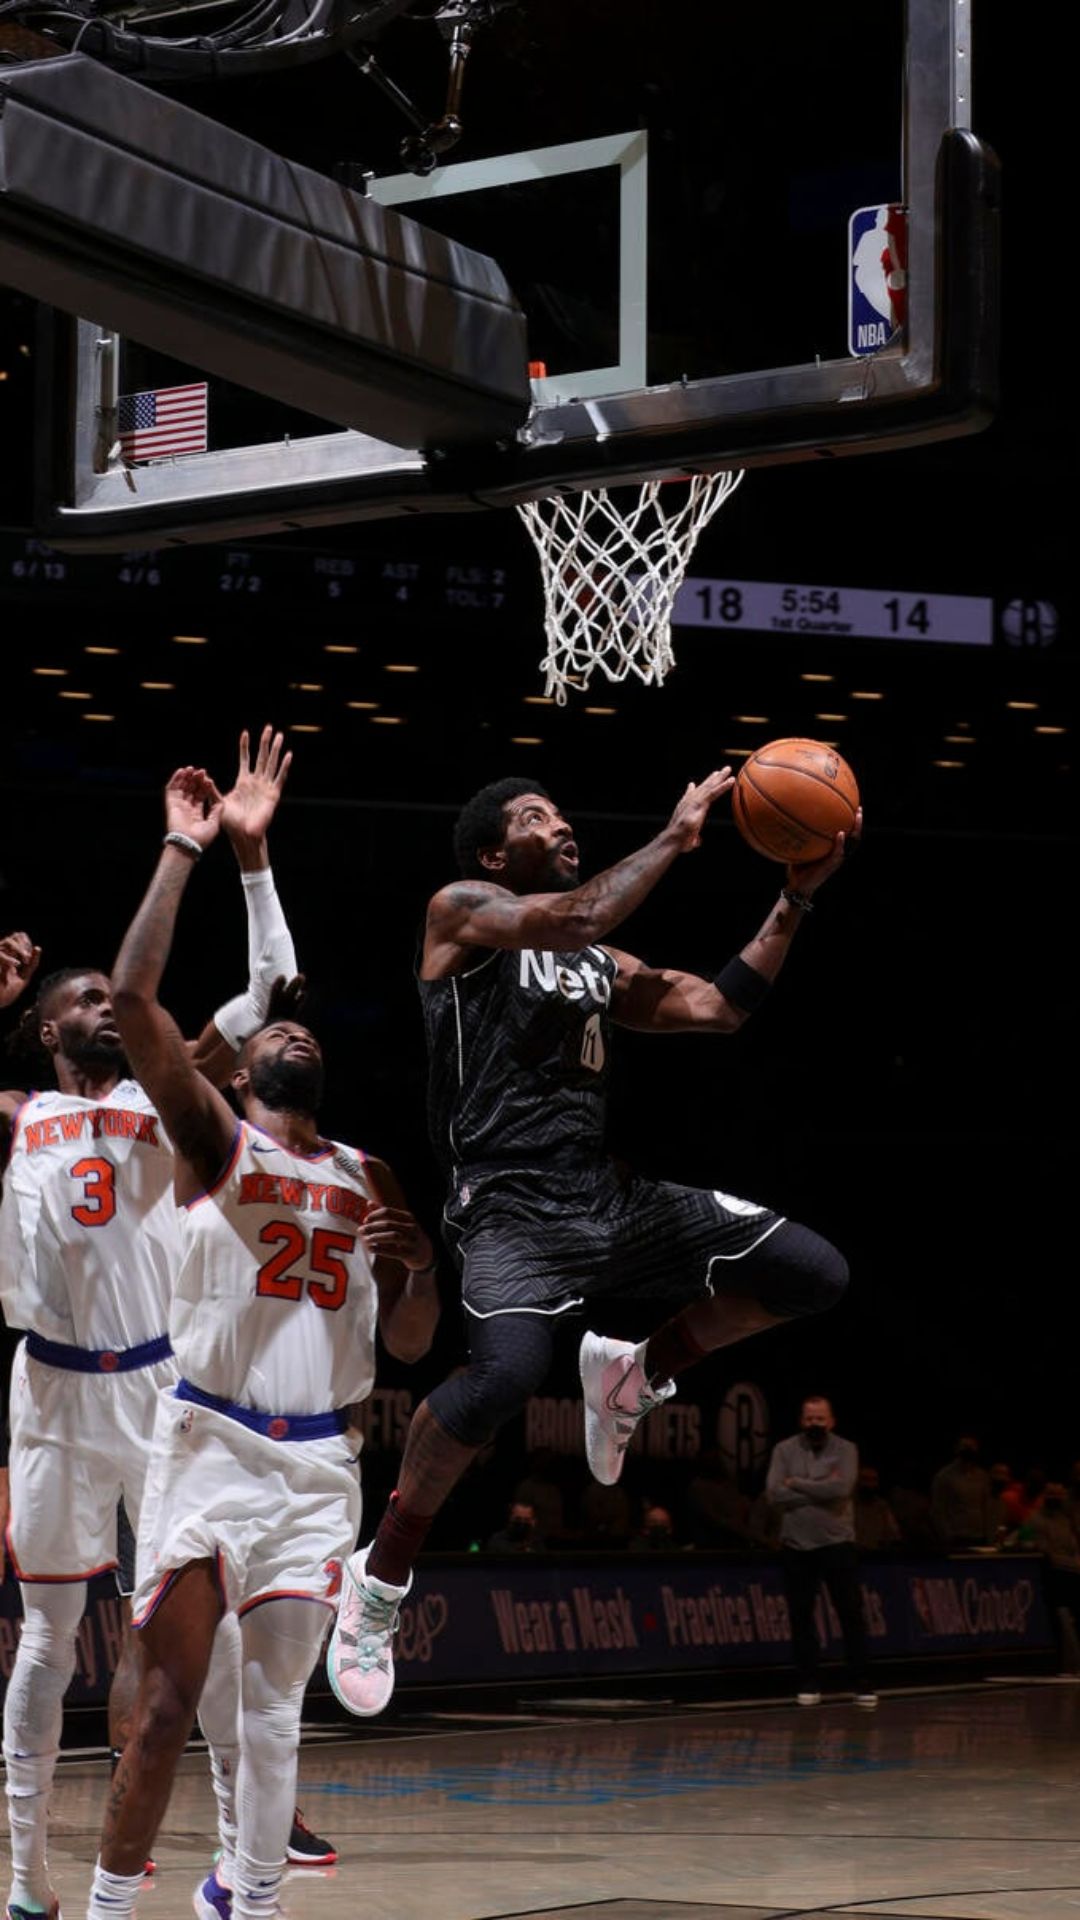 Brooklyn Nets Wallpapers - Top 25 Best Brooklyn Nets Backgrounds